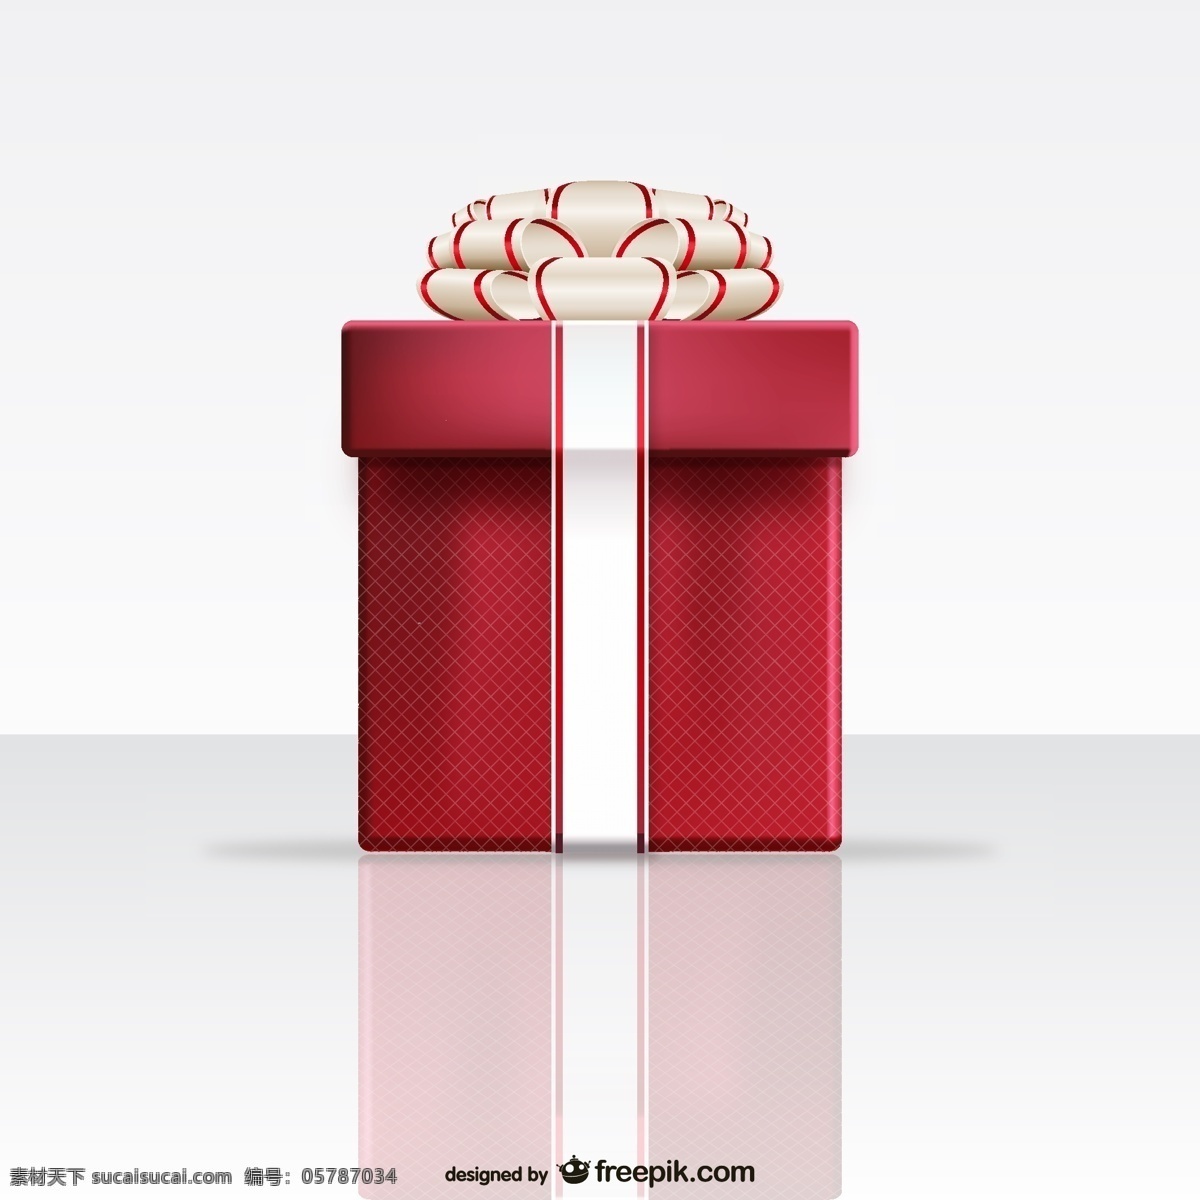 红色礼品盒 生日 圣诞节 盒子 礼品 红色 礼品盒 圣诞礼品 生日礼物 白色